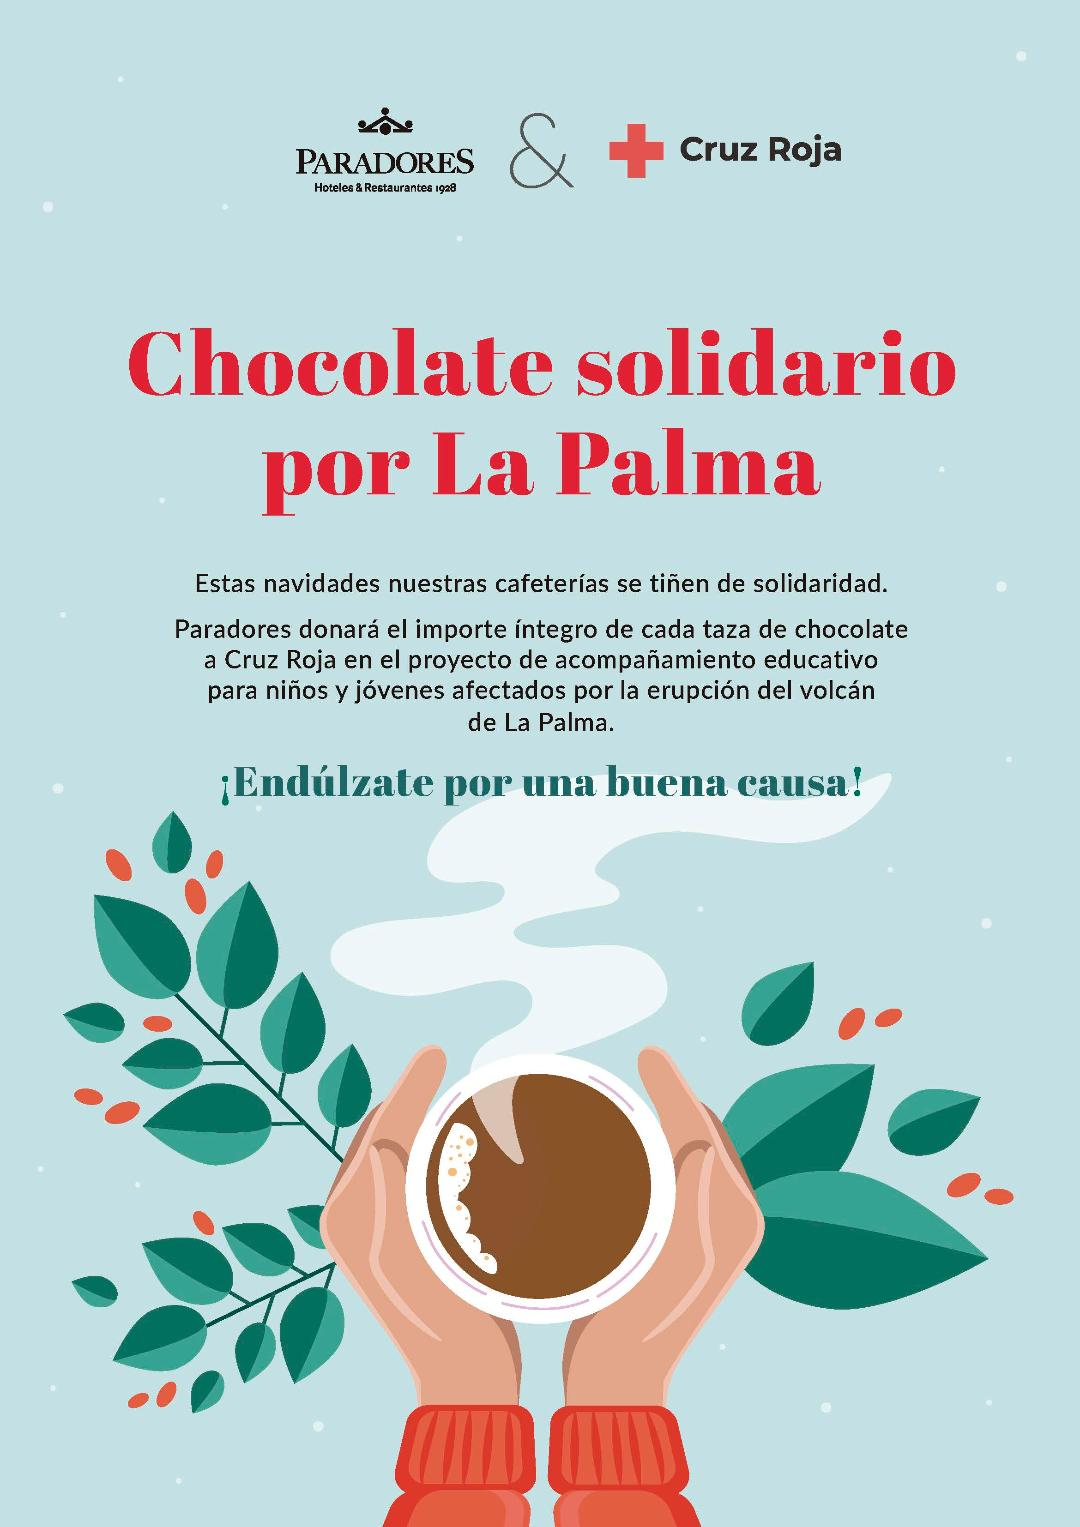 Paradores donará el importe de todo el chocolate que venda esta Navidad a Cruz Roja en beneficio de los niños de La Palma